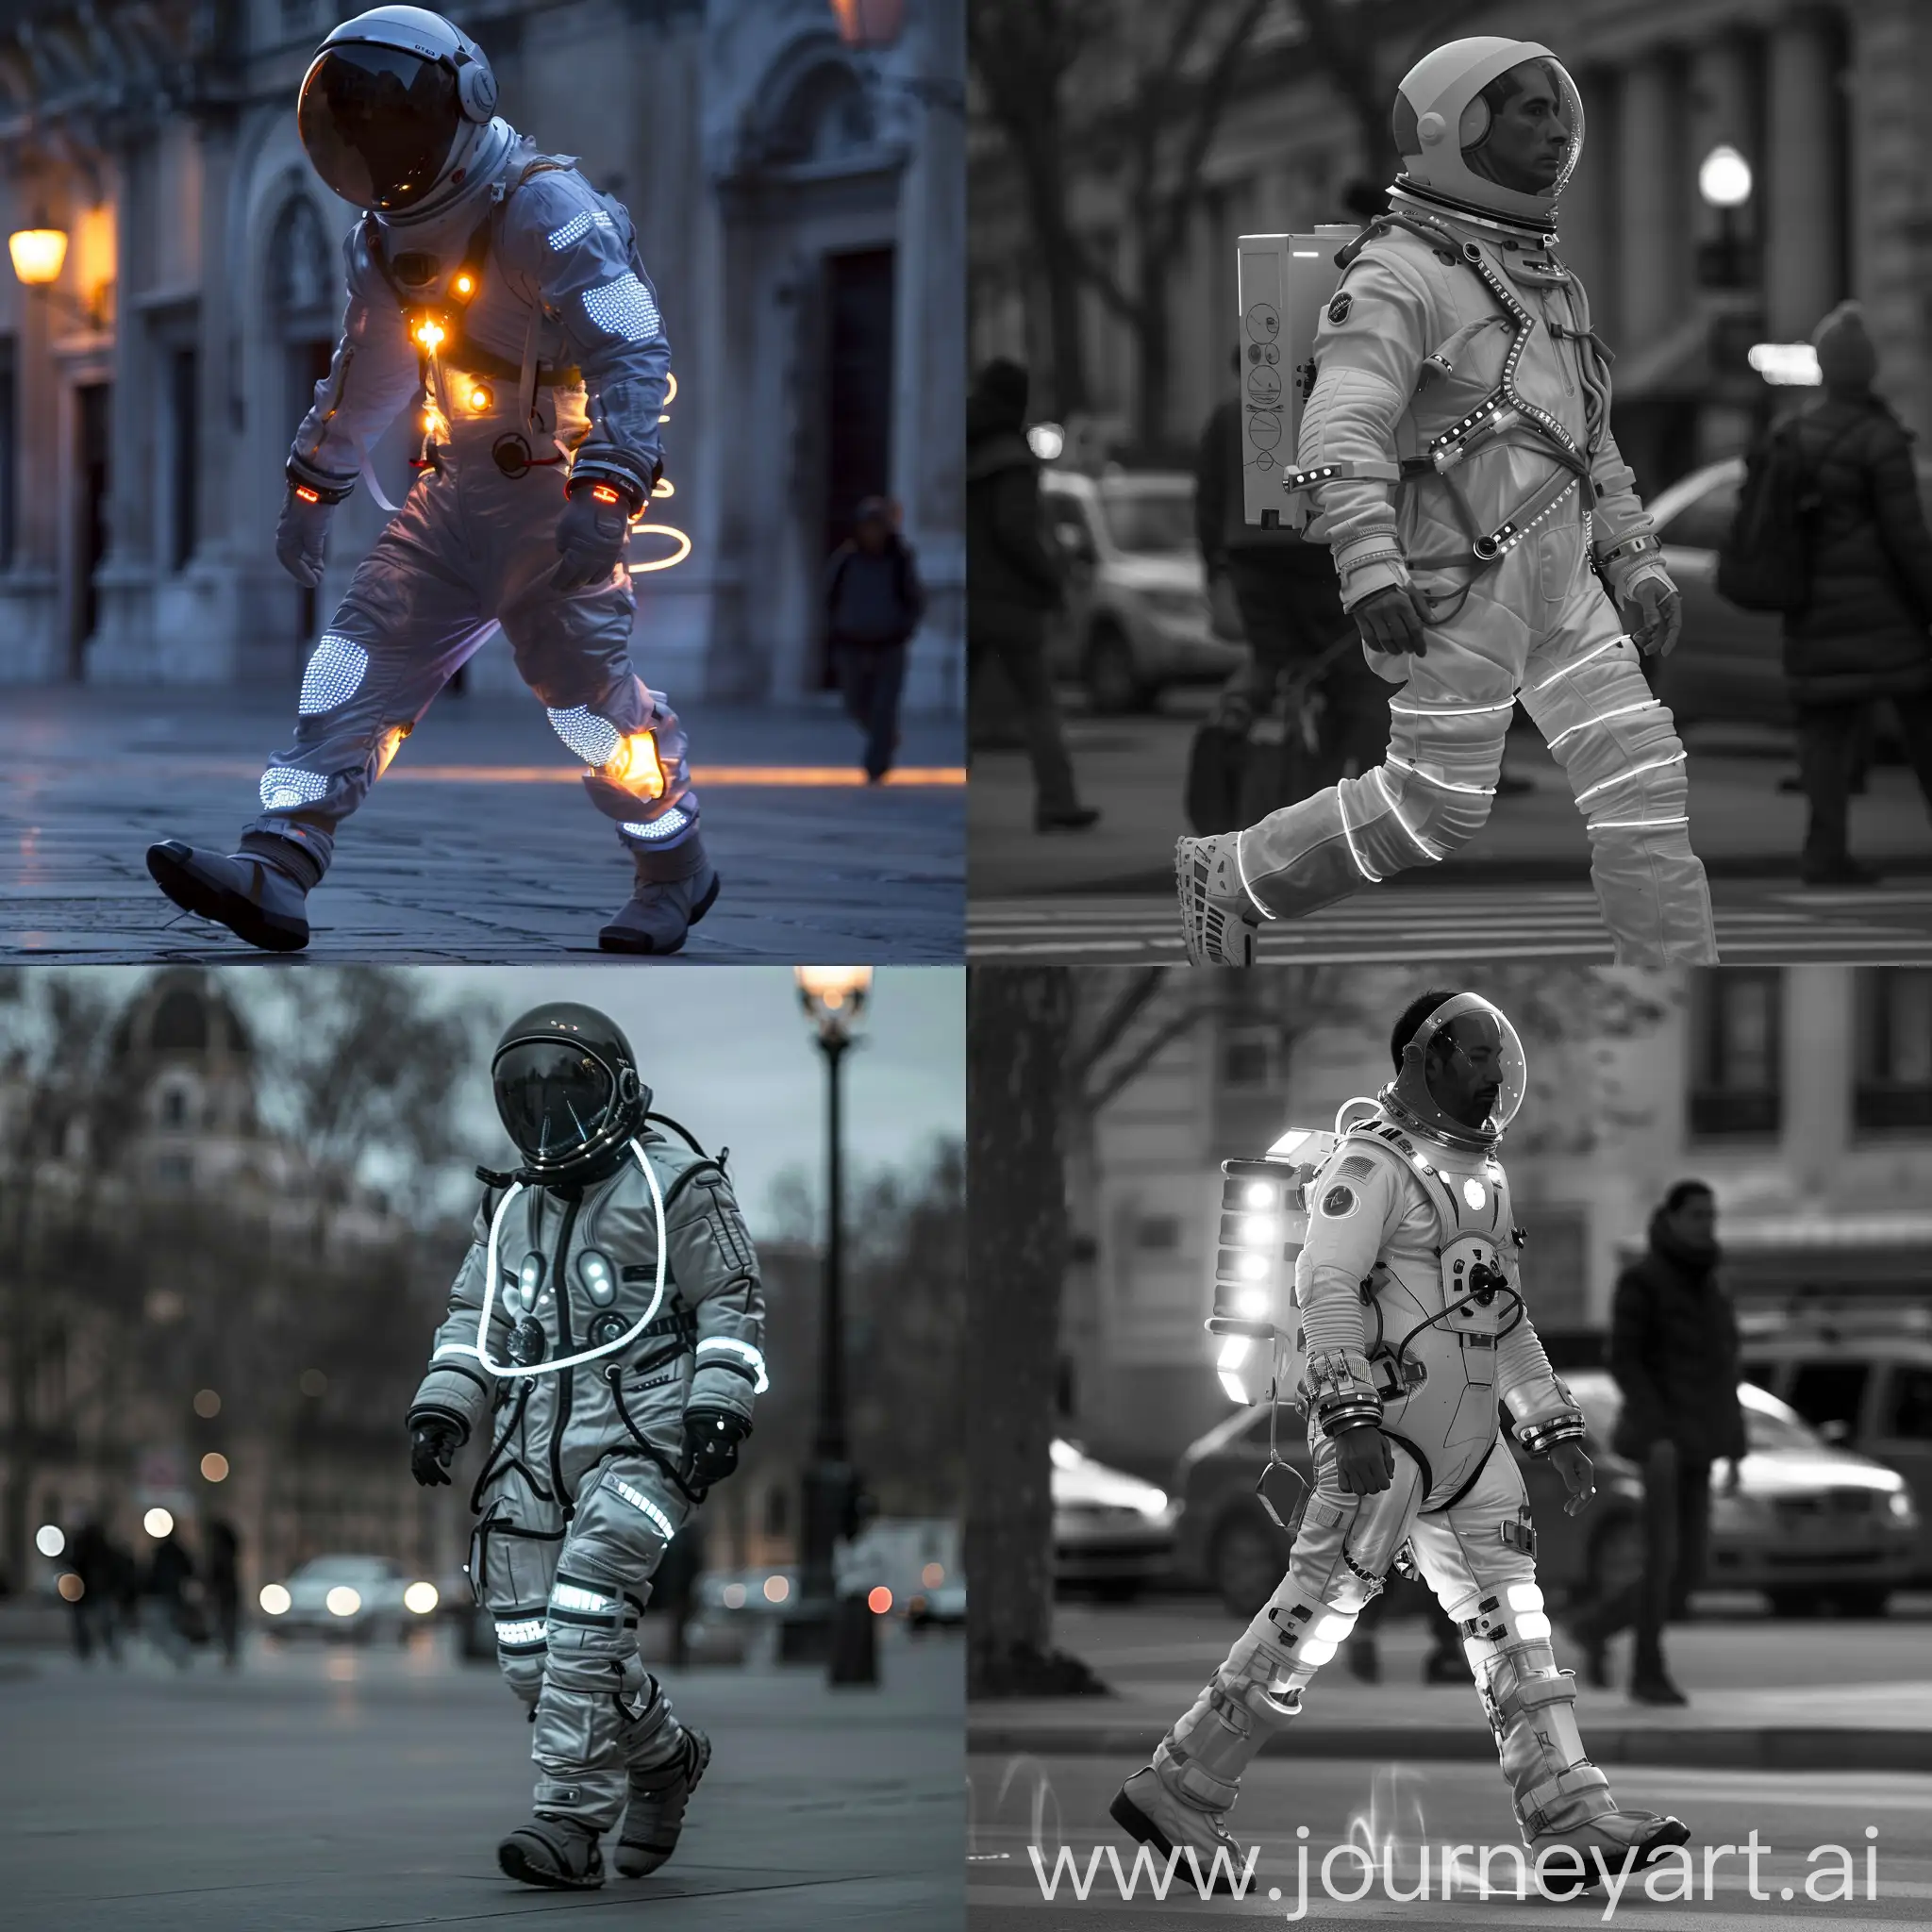 Человек в космическом костюме, но без шлема, с мерцающими LED-диодами на одежде, двигающийся по улице с плавными и медленными шагами, издавая звуки, напоминающие шипение космического корабля.